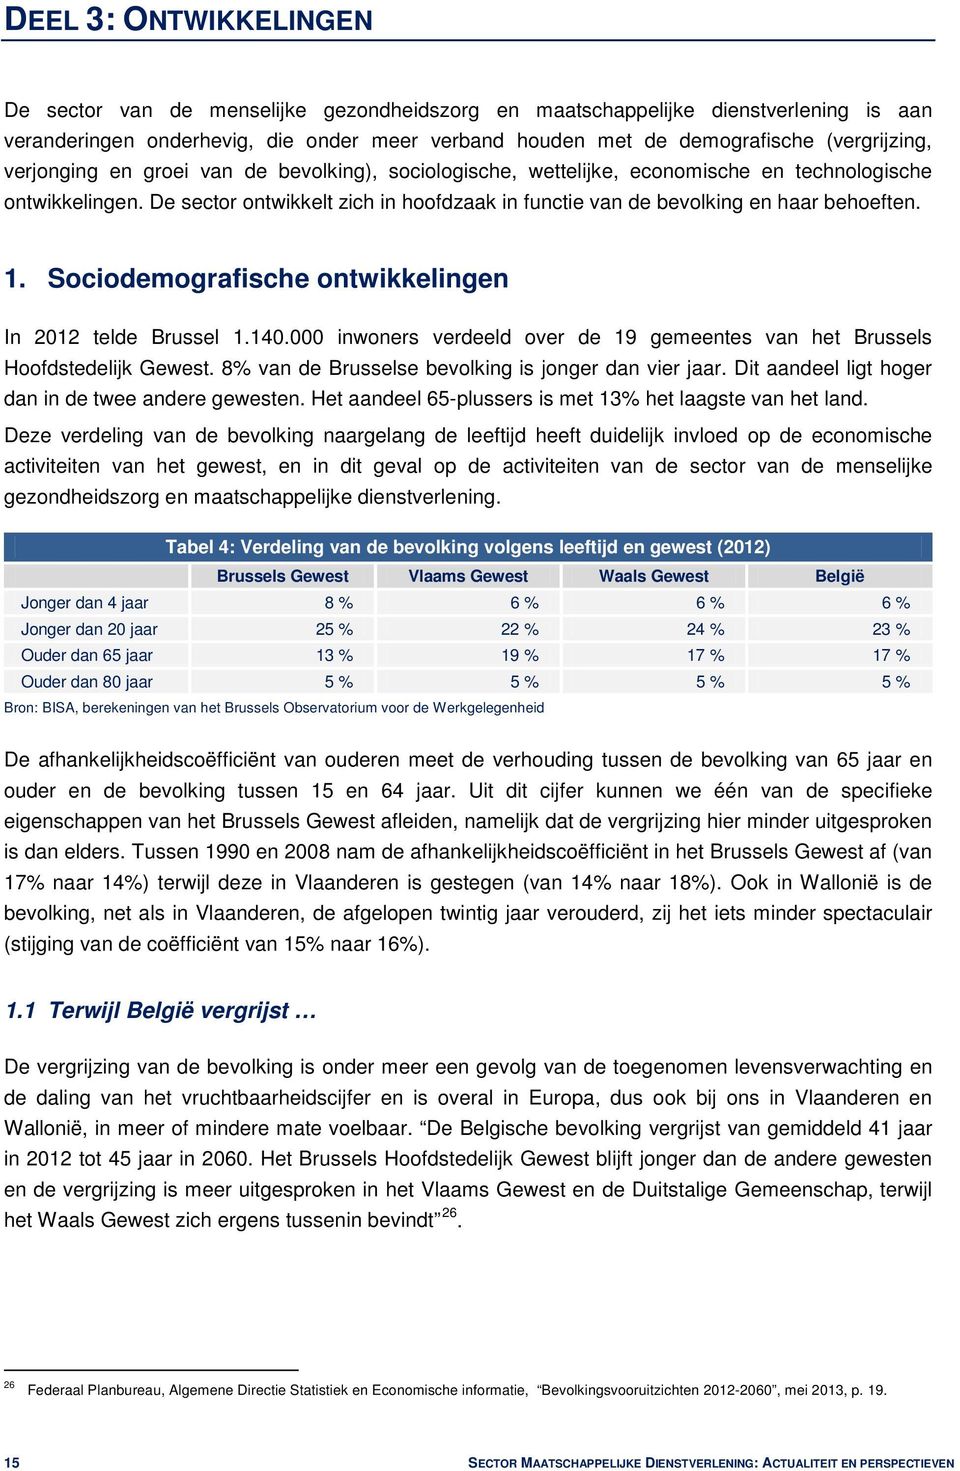 De sector ontwikkelt zich in hoofdzaak in functie van de bevolking en haar behoeften. 1. Sociodemografische ontwikkelingen In 2012 telde Brussel 1.140.